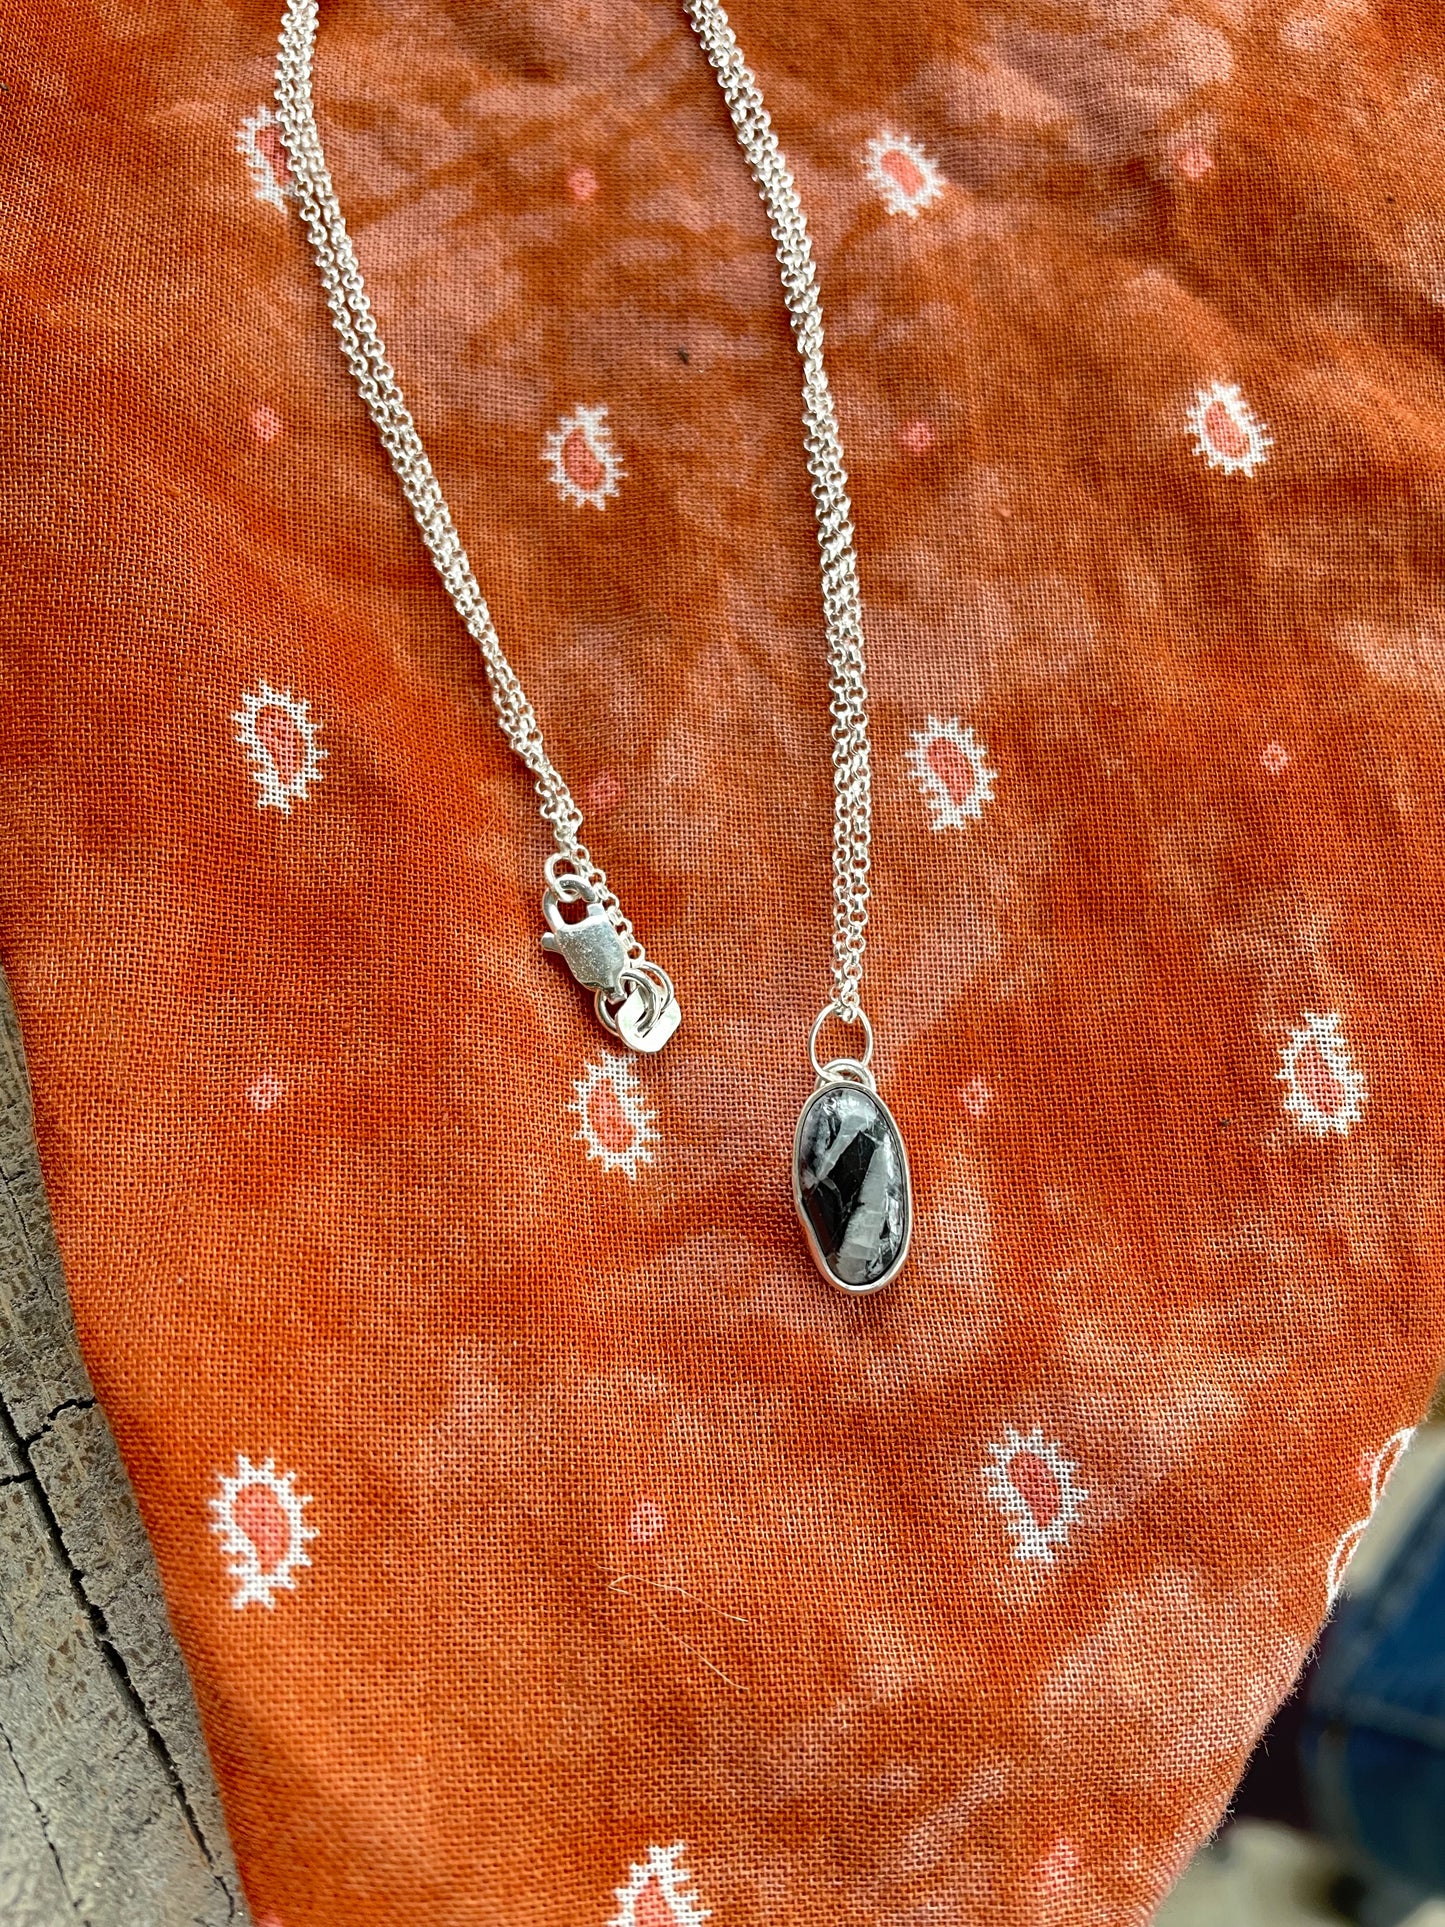 White Buffalo Turquoise "Mini" Necklace no. 3